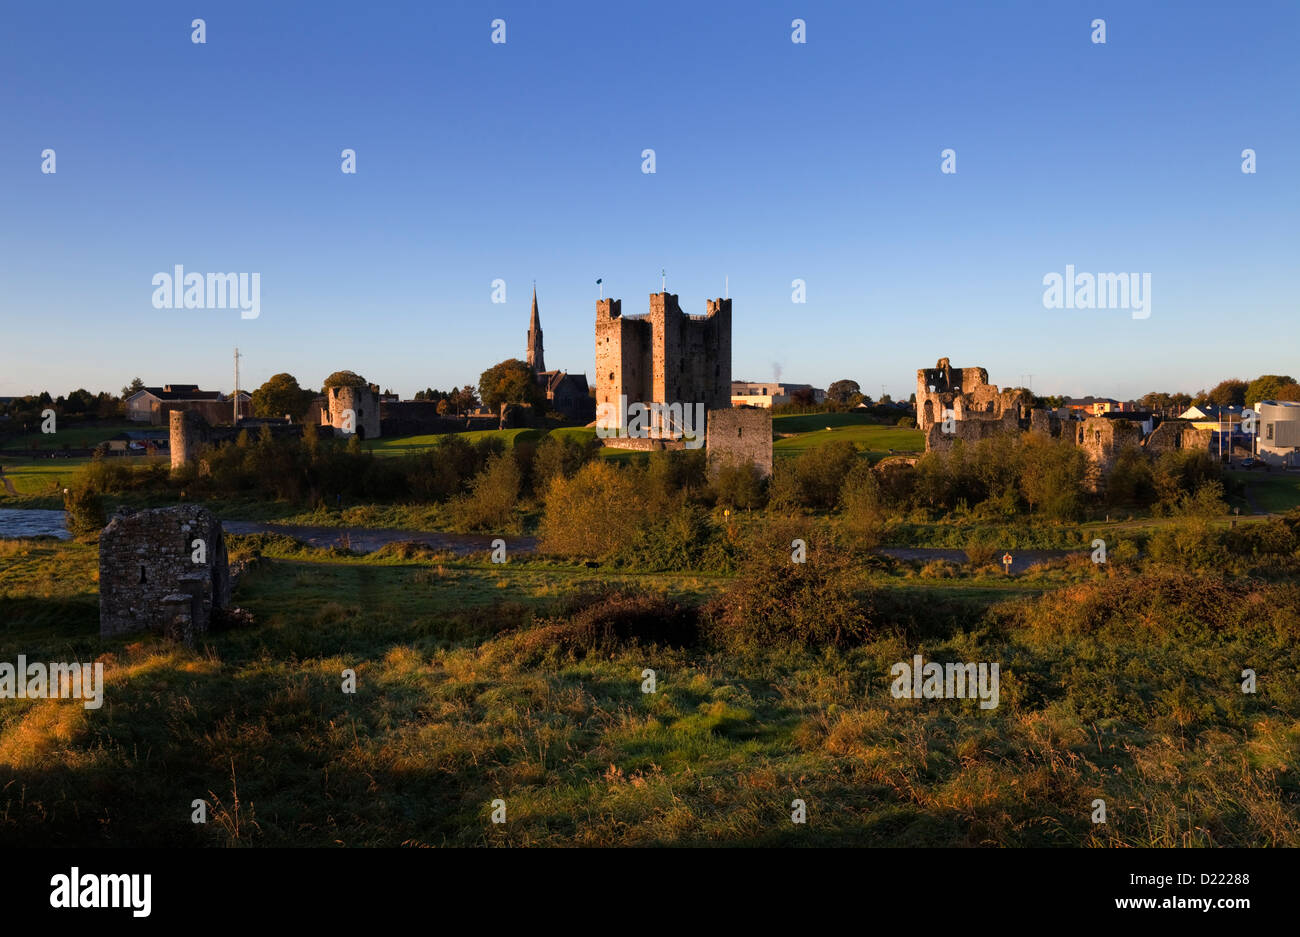 Anglo-normannischen Trim Castle am Ufer des Flusses Boyne, verwendet als Drehort für den Film "Braveheart", Trim, County Meath, Irland Stockfoto